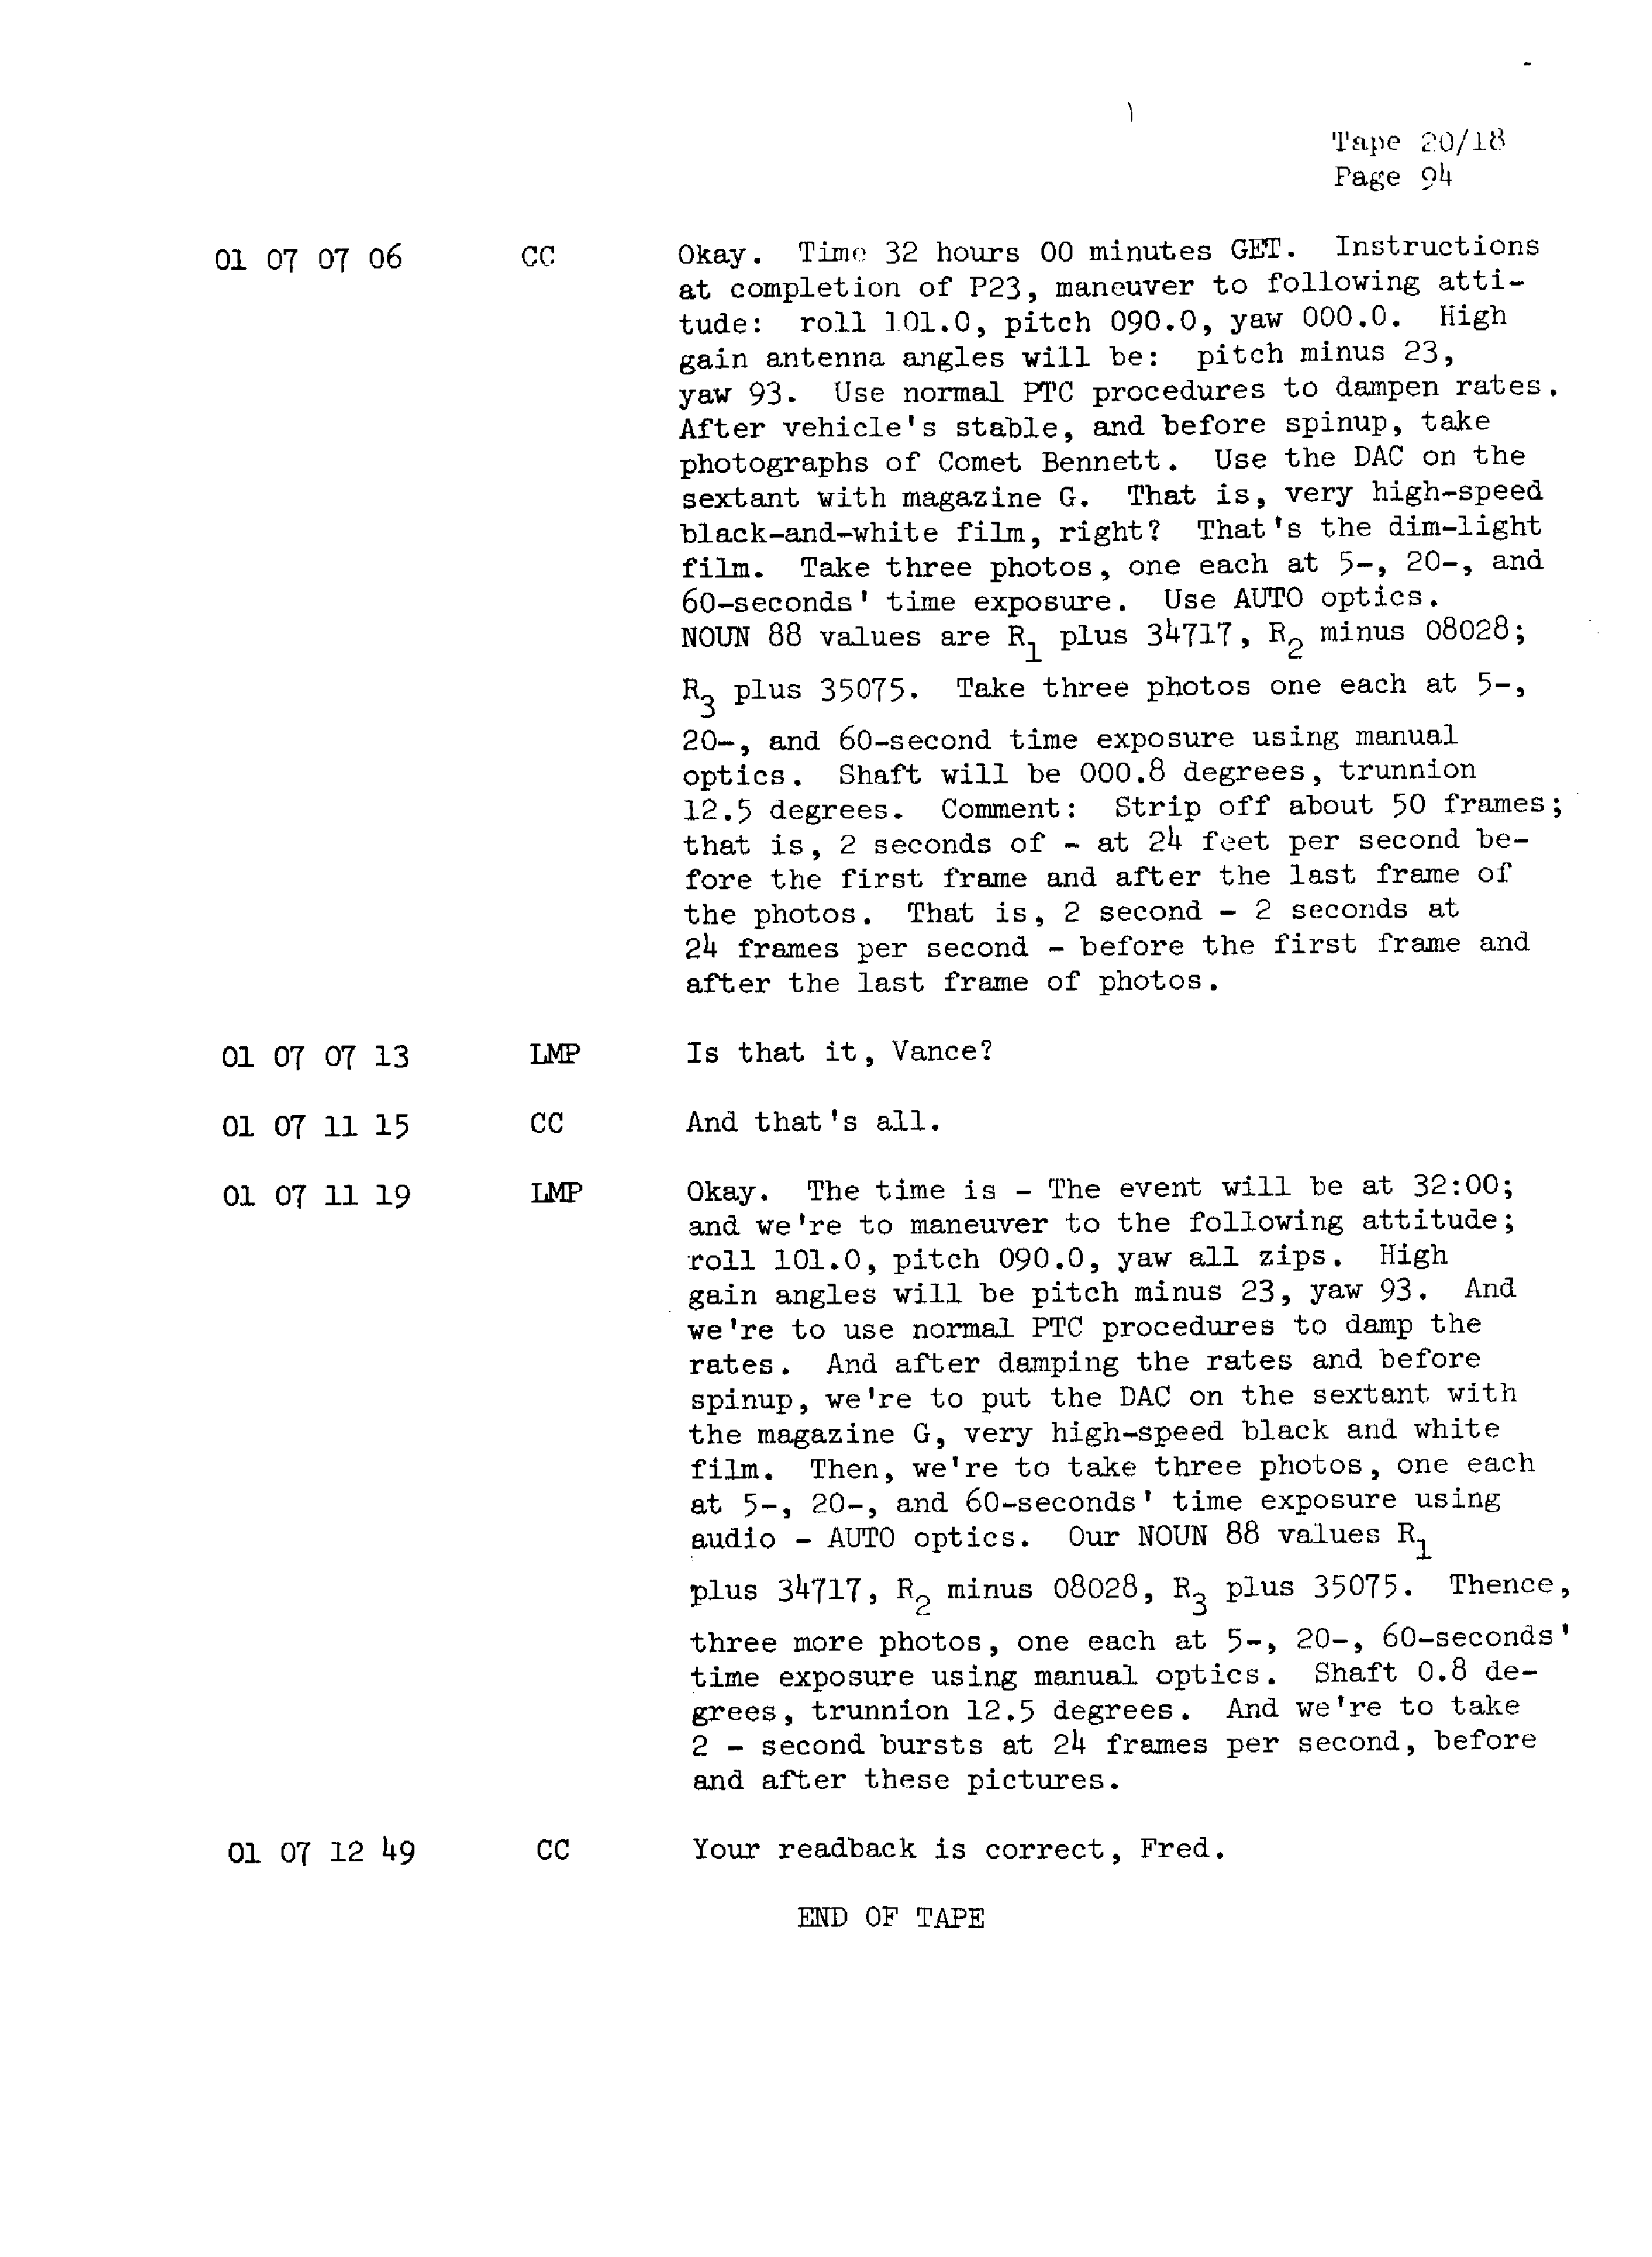 Page 101 of Apollo 13’s original transcript